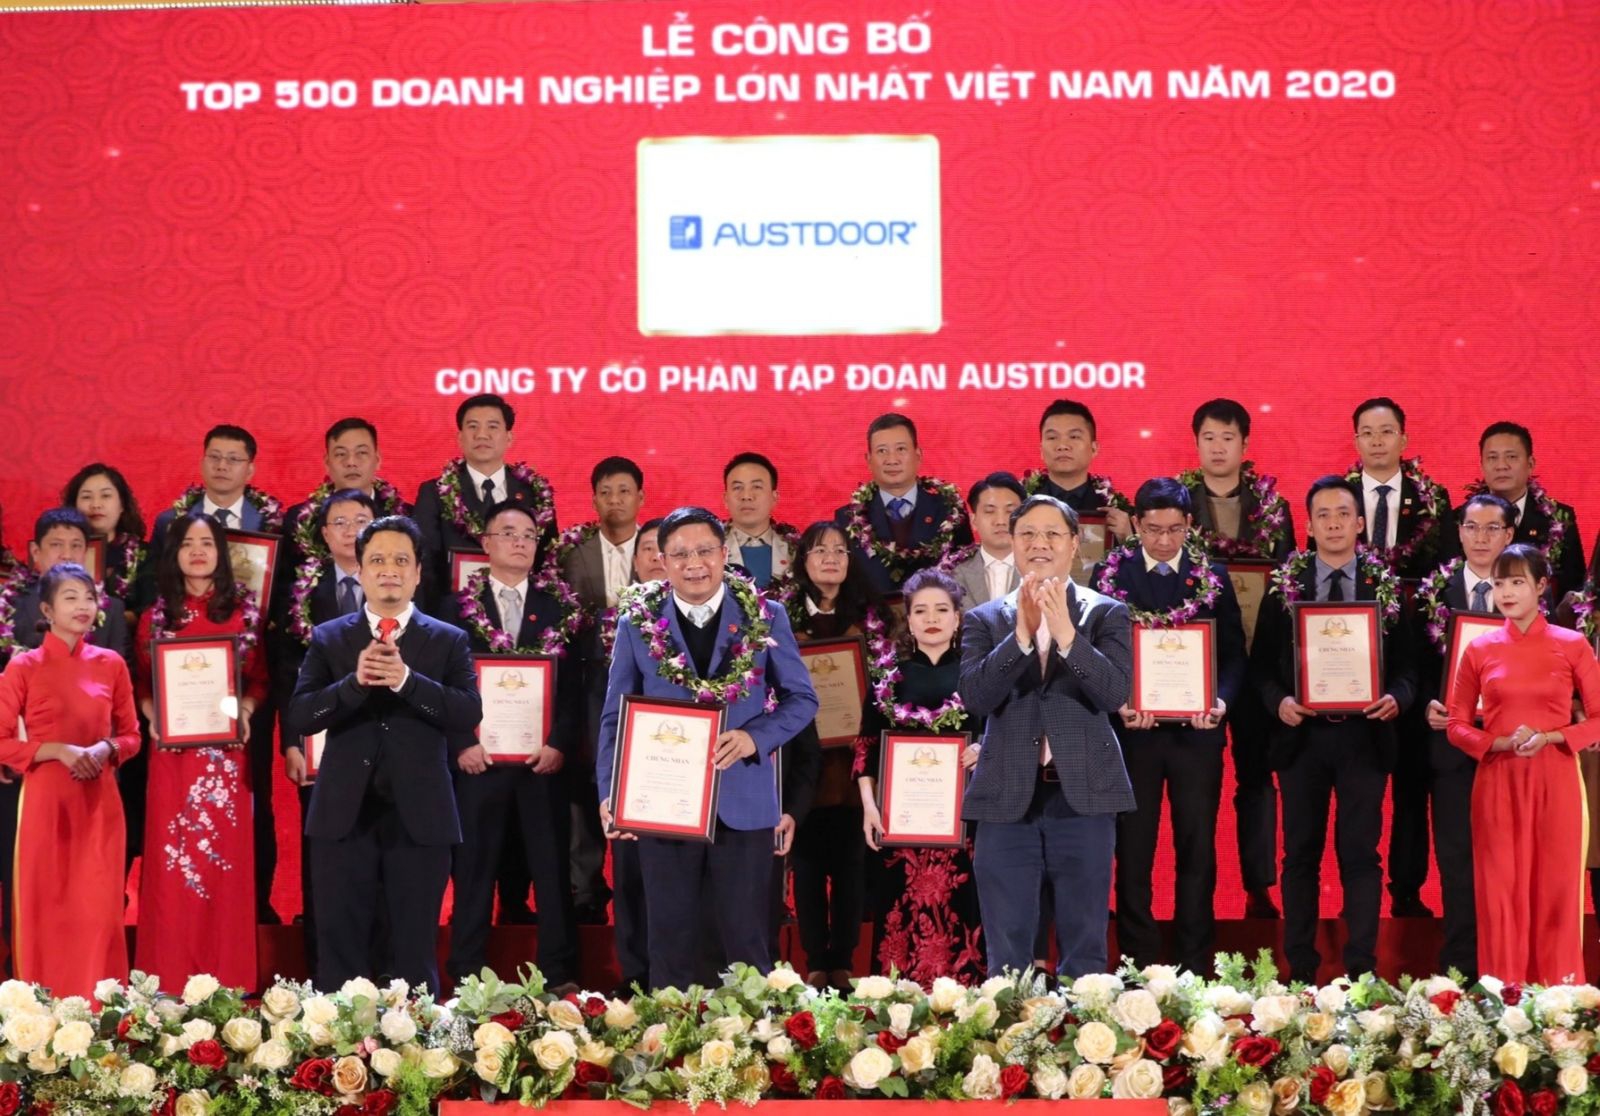 ✅ AUSTDOORCARE ✅Tập đoàn Austdoor nằm trong top 500 doanh nghiệp lớn nhất việt nam